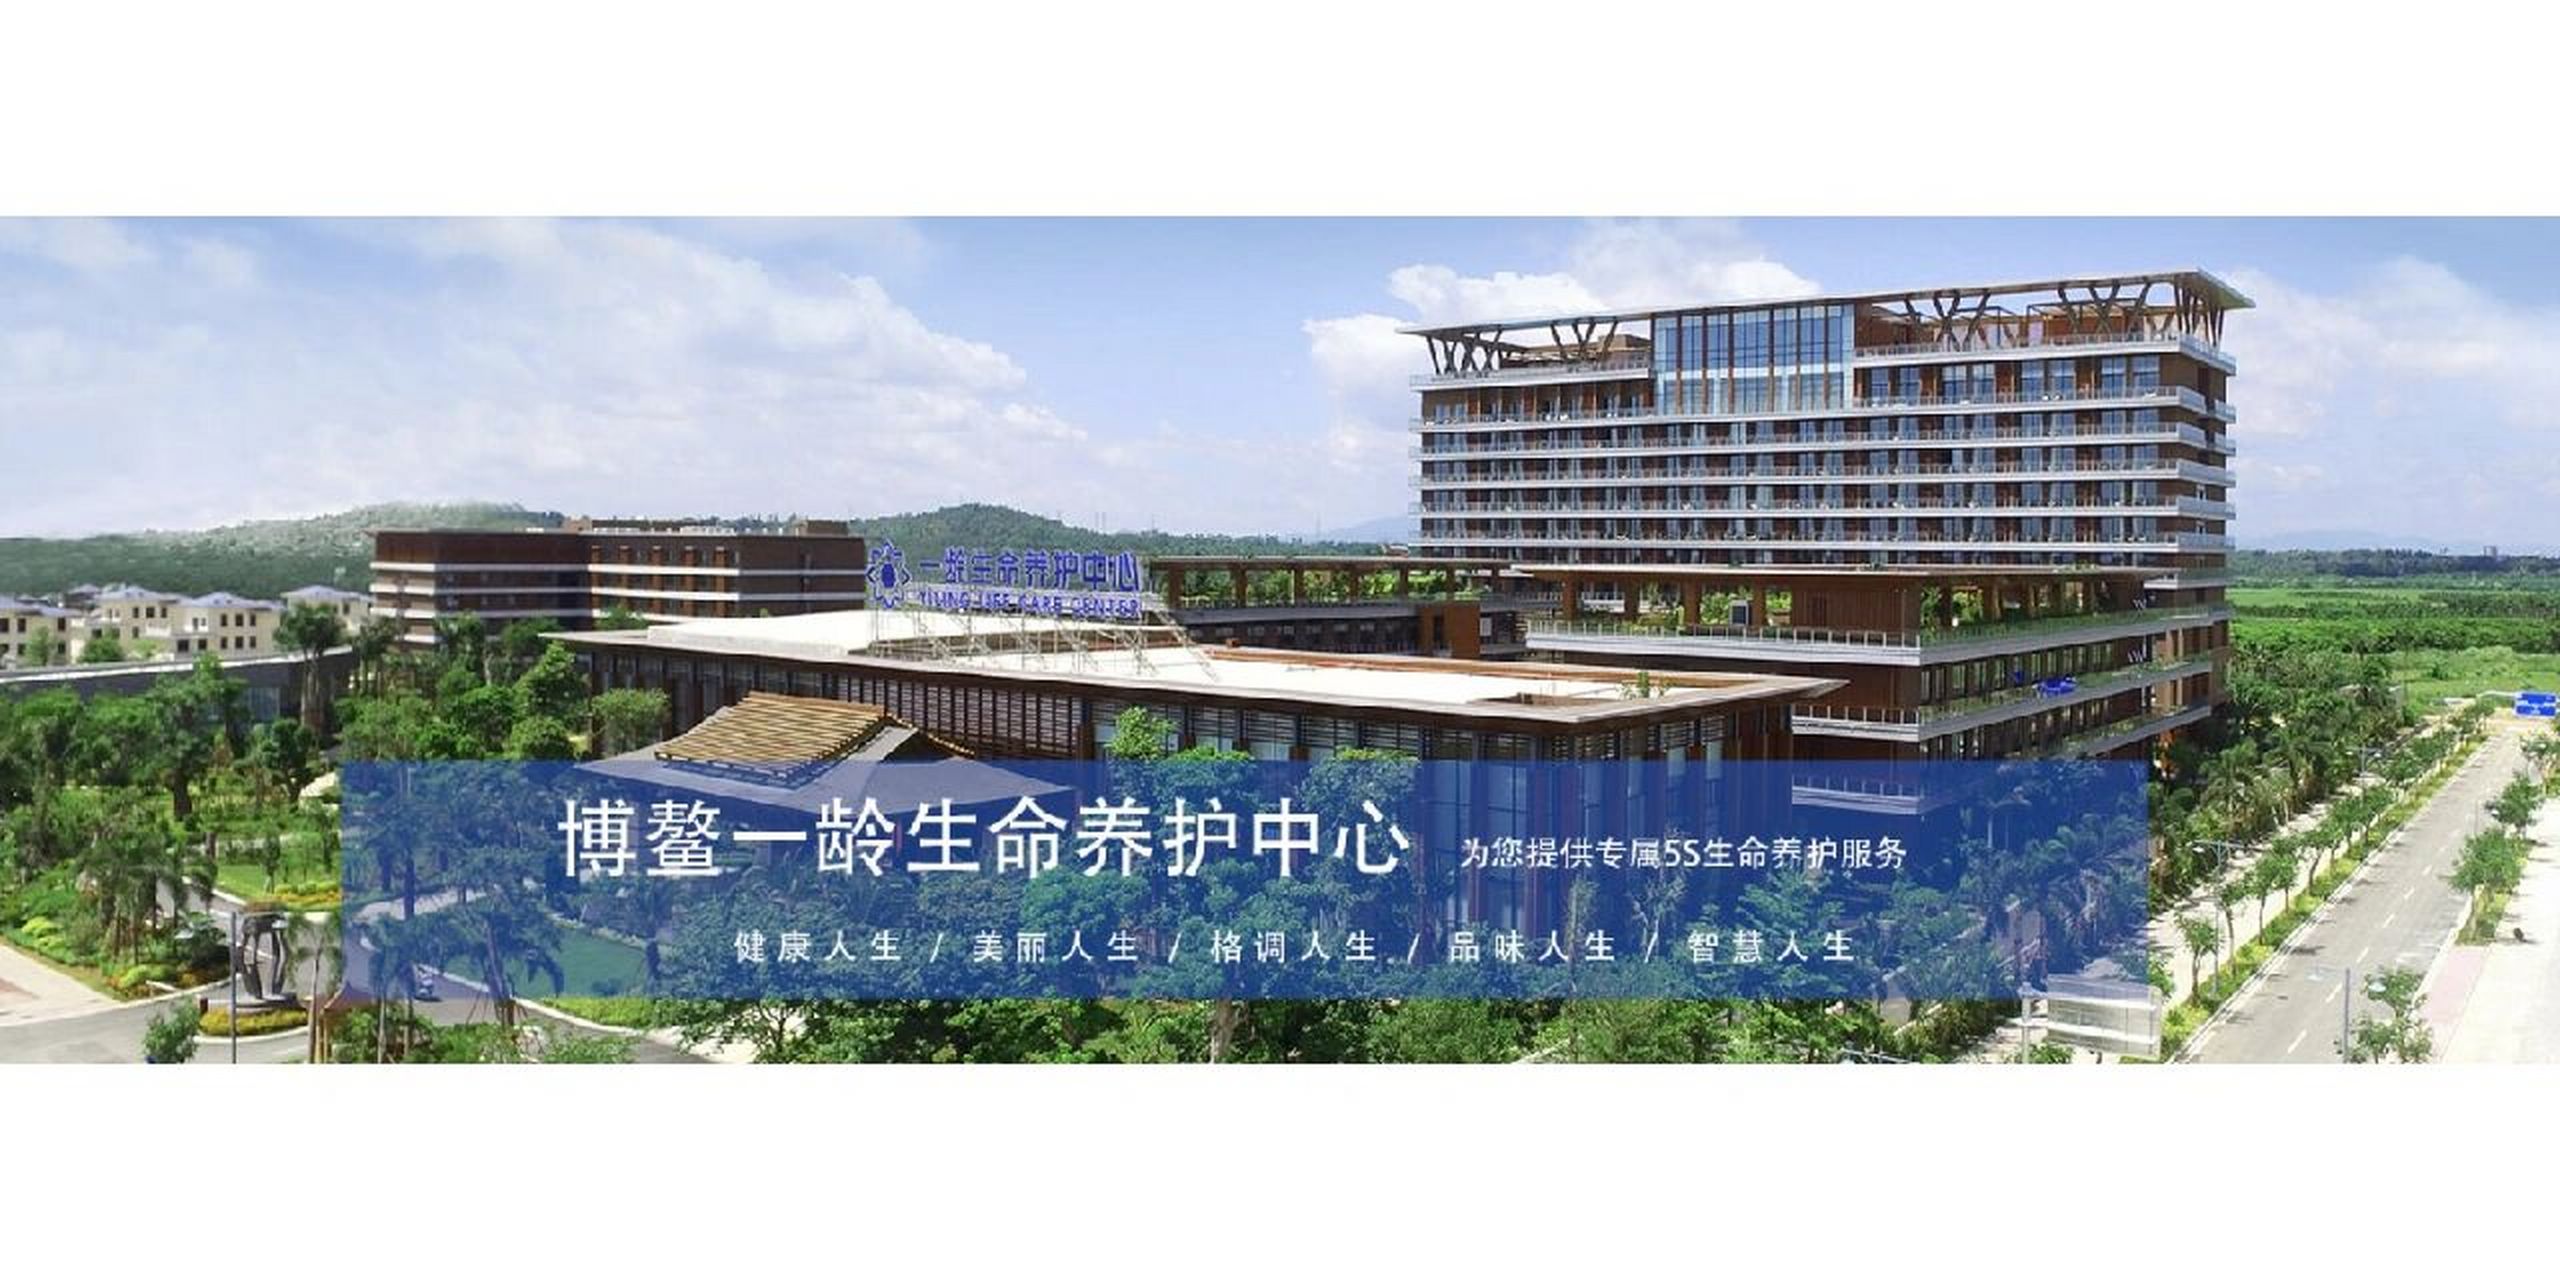 博鳌一龄生命养护中心是国内首家以生命养护命名的三级综合医疗机构